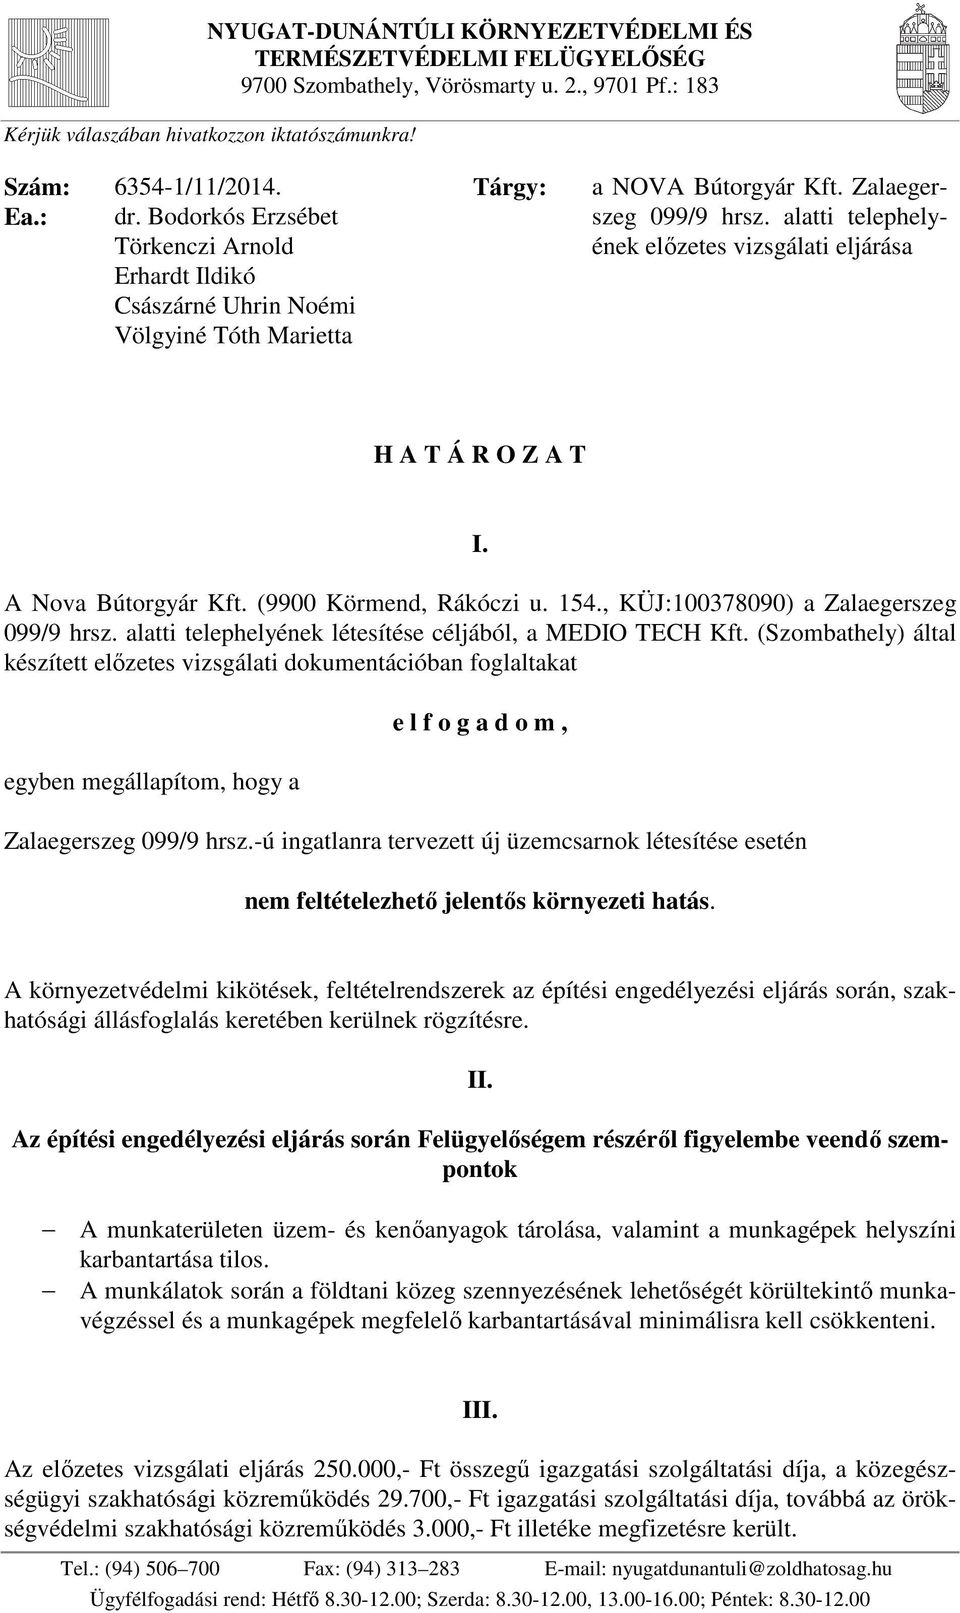 alatti telephelyének előzetes vizsgálati eljárása H A T Á R O Z A T I. A Nova Bútorgyár Kft. (9900 Körmend, Rákóczi u. 154., KÜJ:100378090) a Zalaegerszeg 099/9 hrsz.